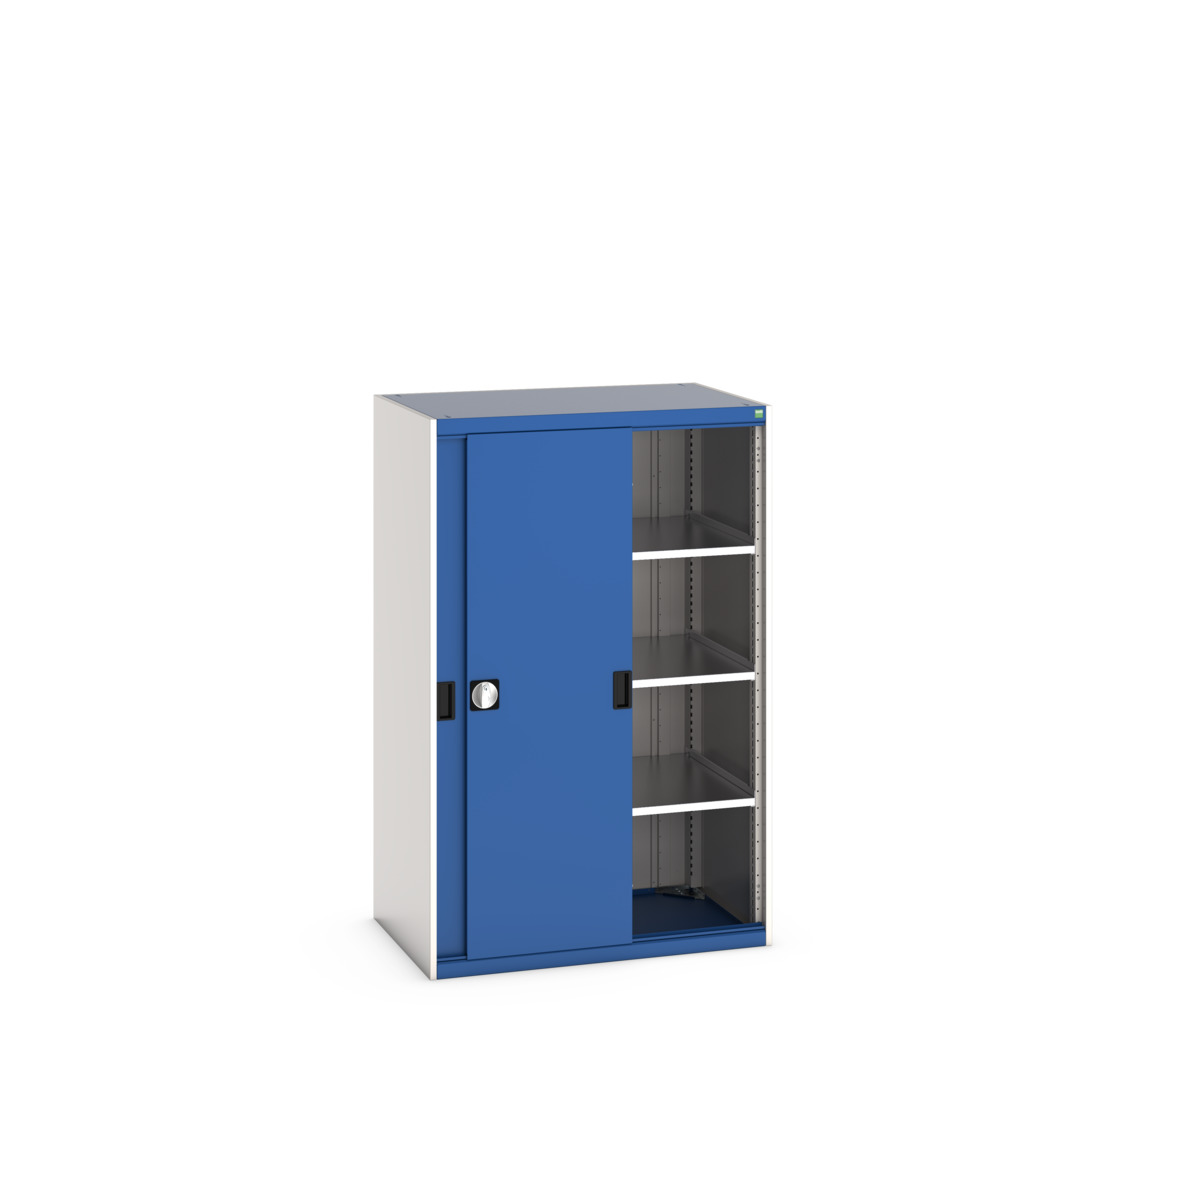 40021214.11V - cubio cupboard